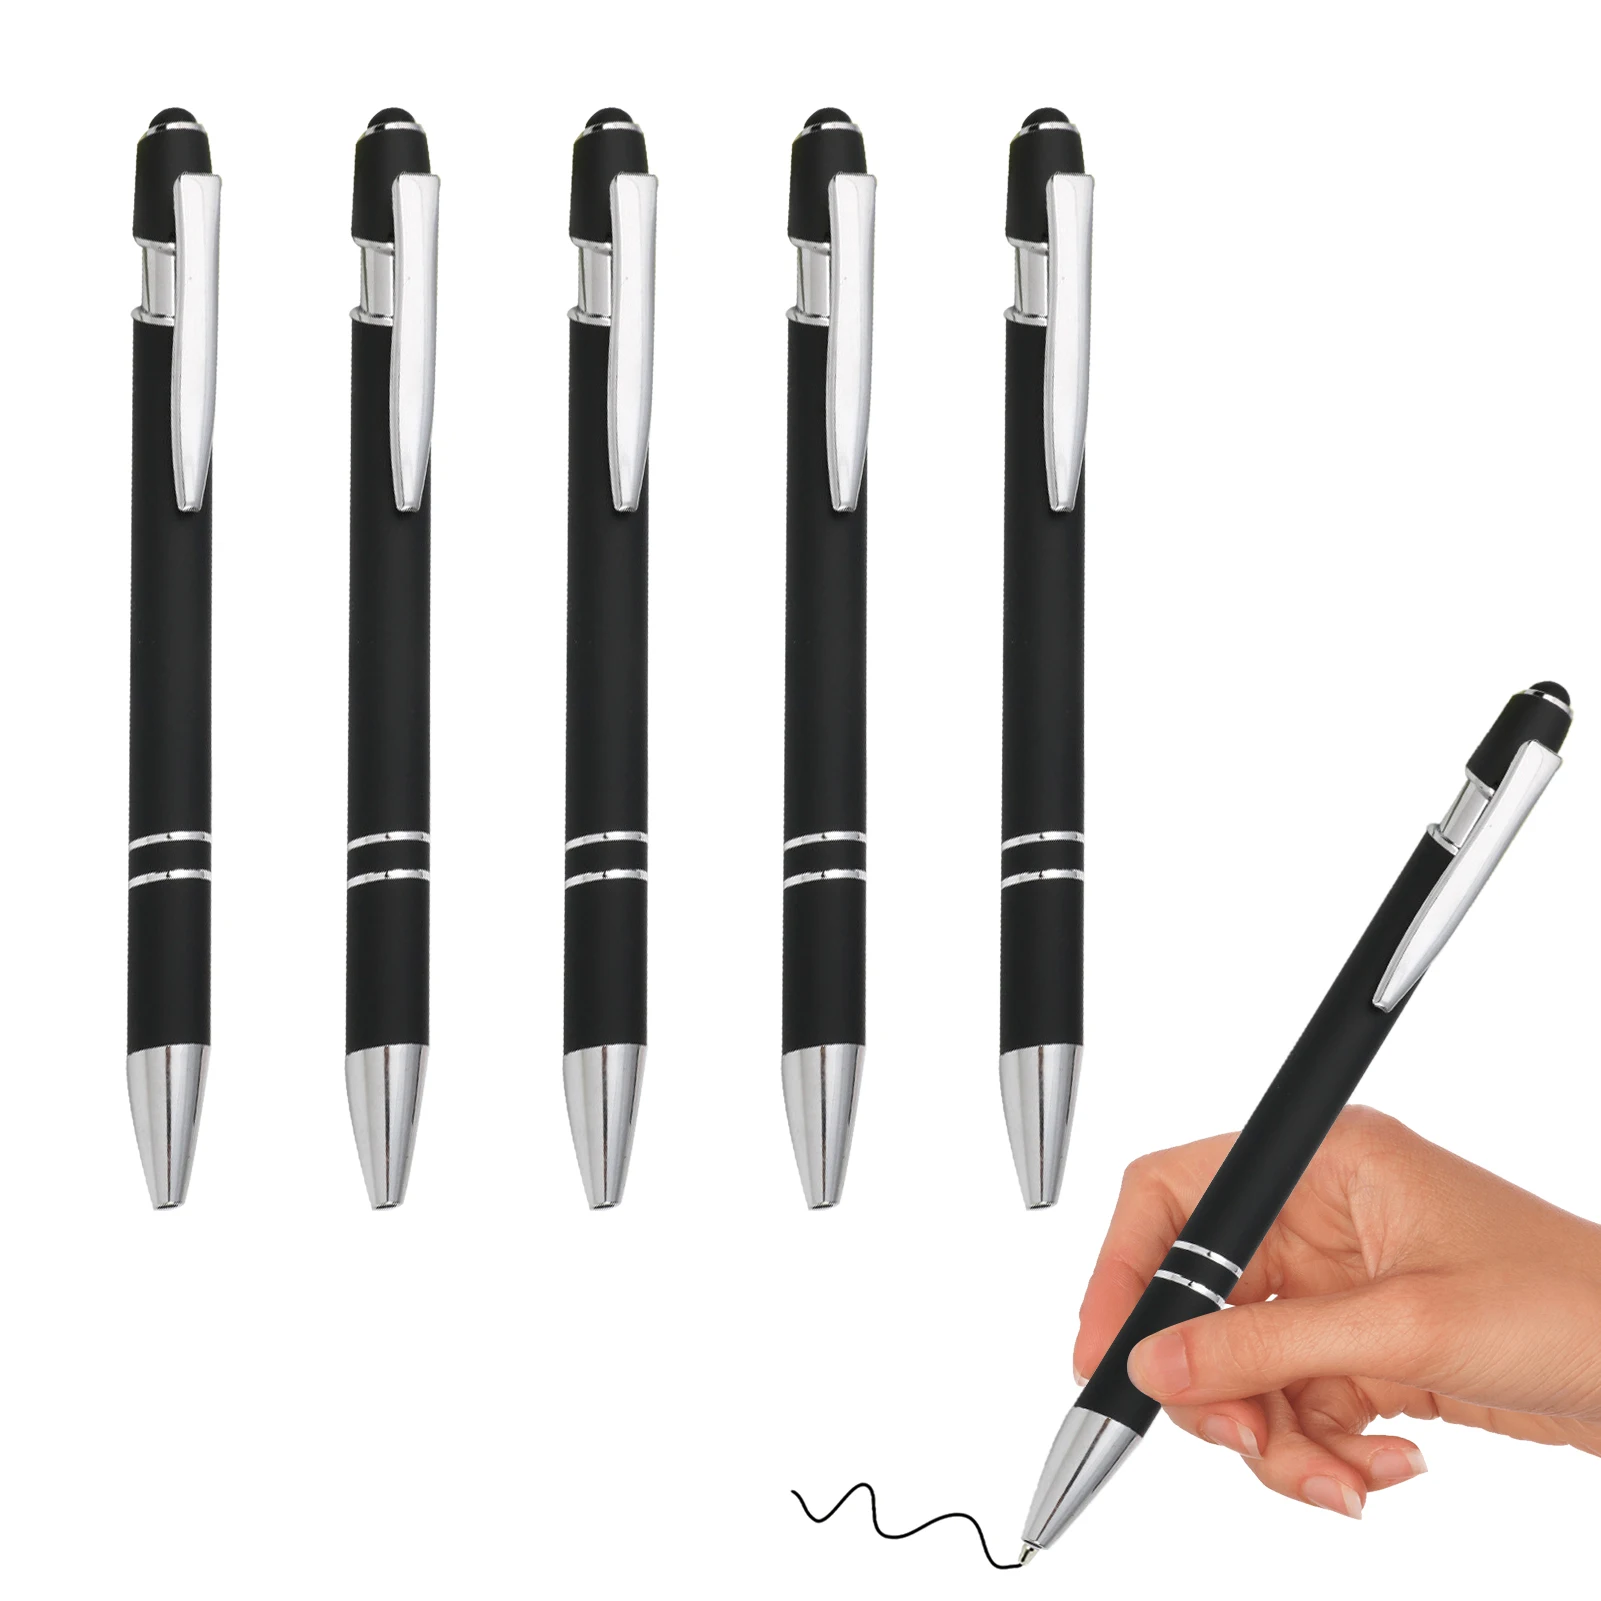 5pcs Ергономична дръжка химикалка 0,7 мм фини домакински канцеларски бутон за писане гладка без хлъзгане сцепление черно мастило